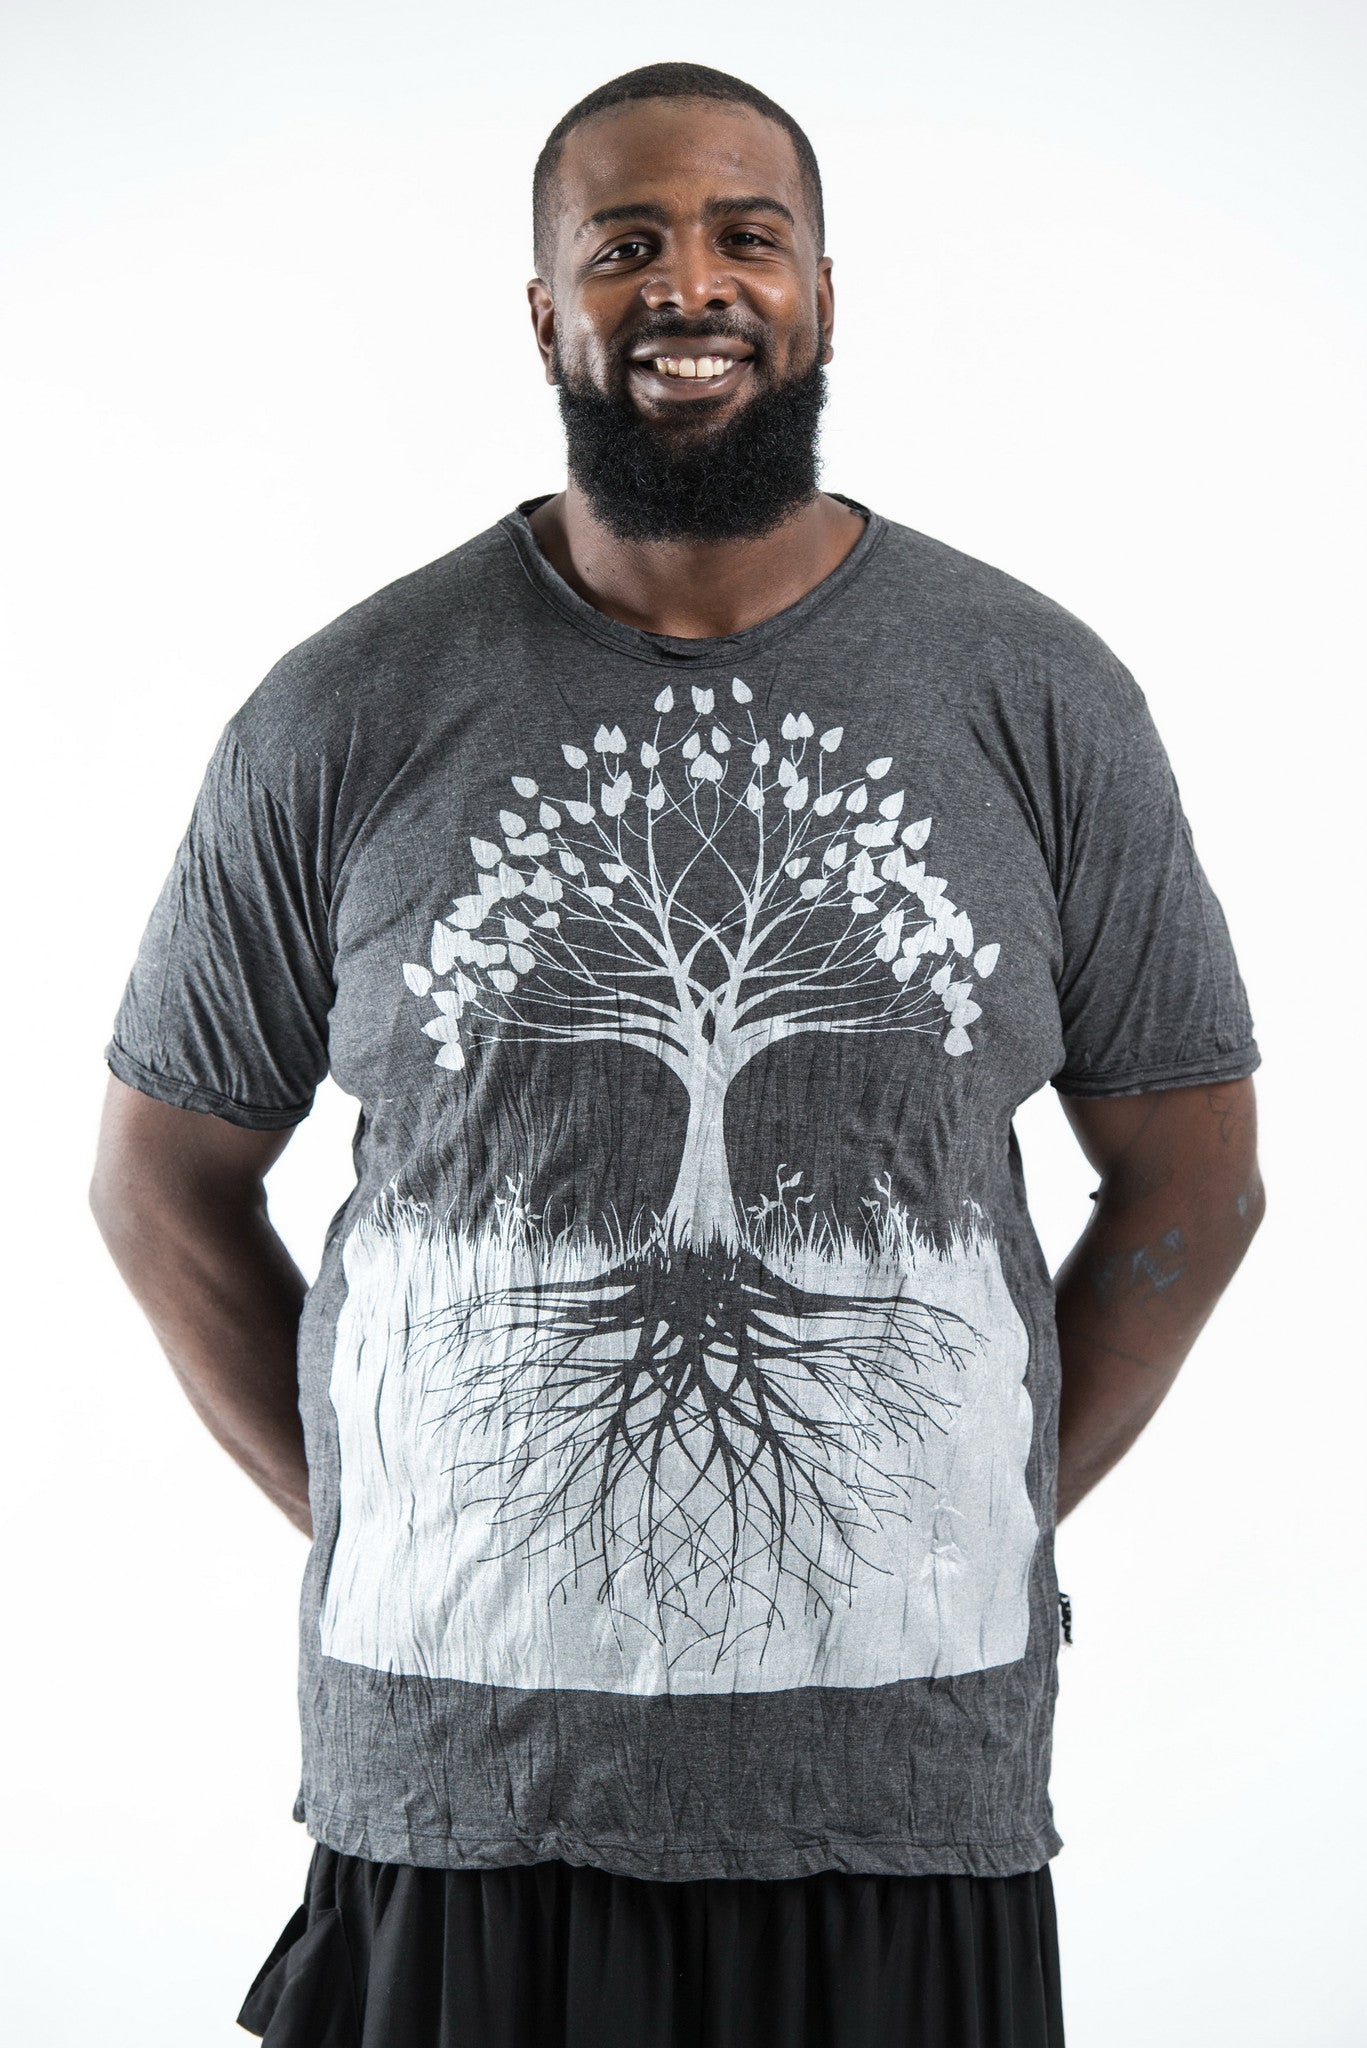 Plus Size Sure Design Men's Tree of Life T-Shirt Silver on Black – Sure  Design Wholesale